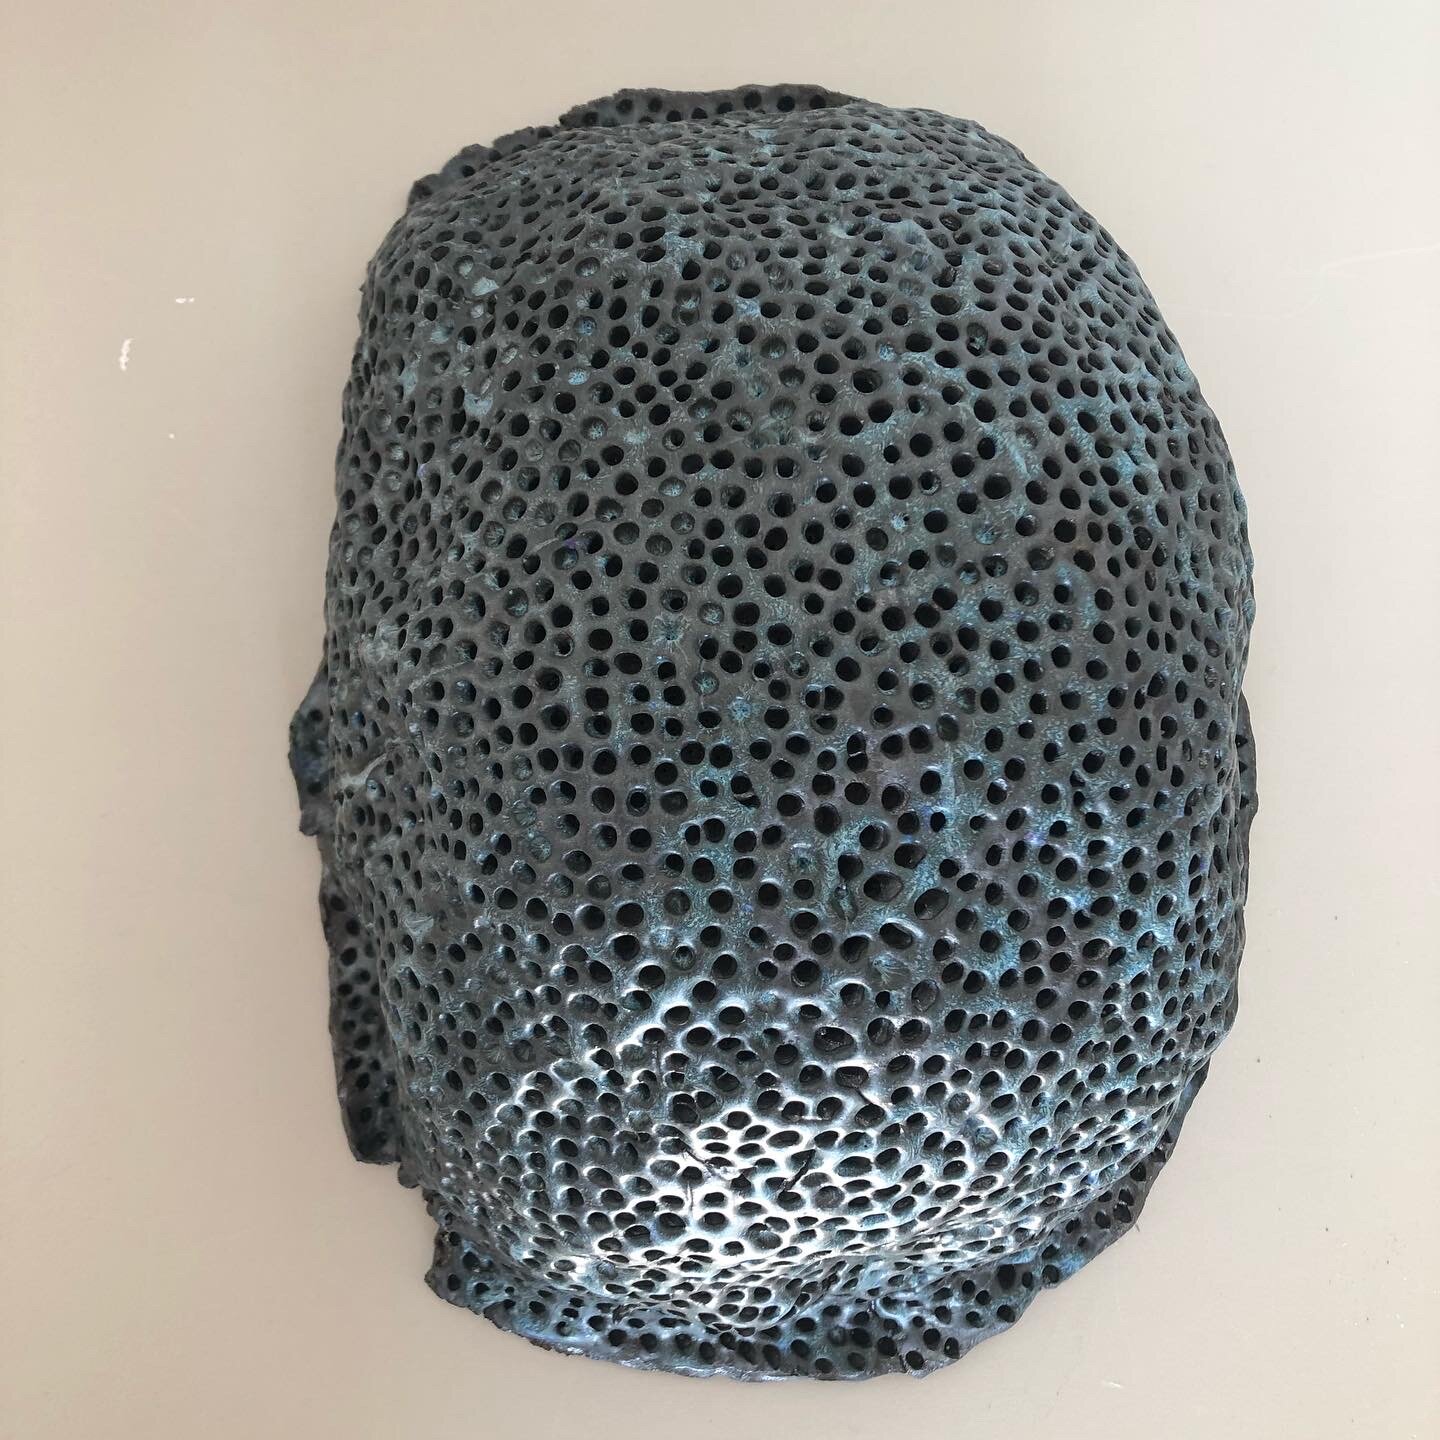 Belly (What Hole?), 2020, glazed ceramic, 15 x 10 x 6 1/2"